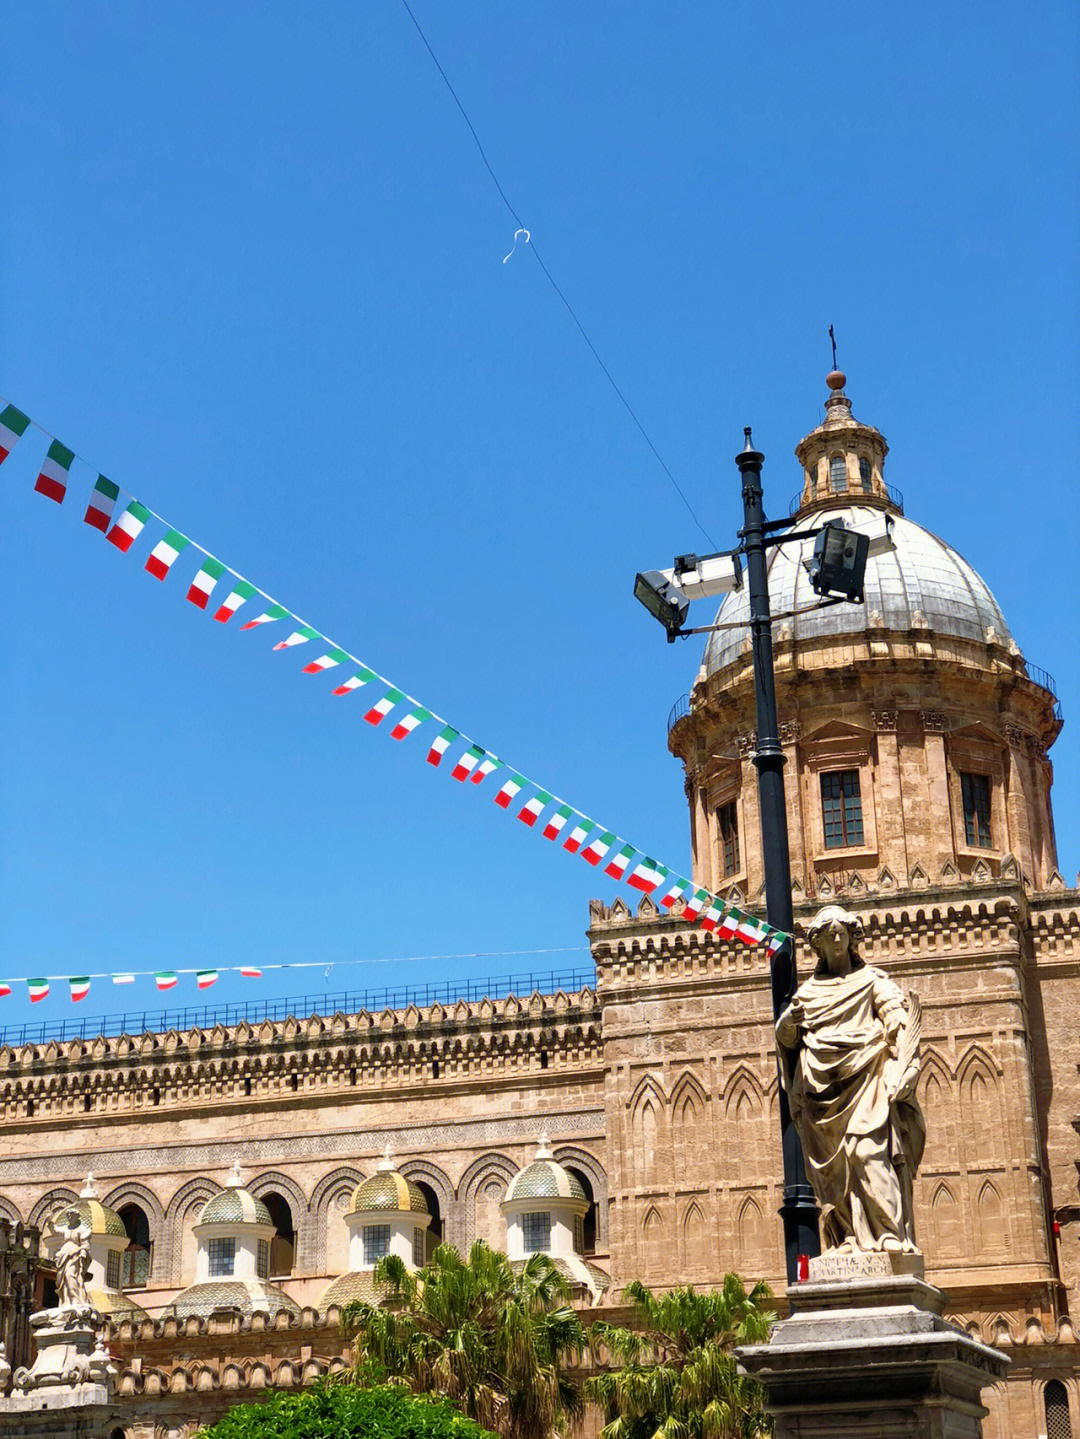 巴勒莫市中心彩旗飘扬,从机场到市区的路上也可以看到国旗和西西里